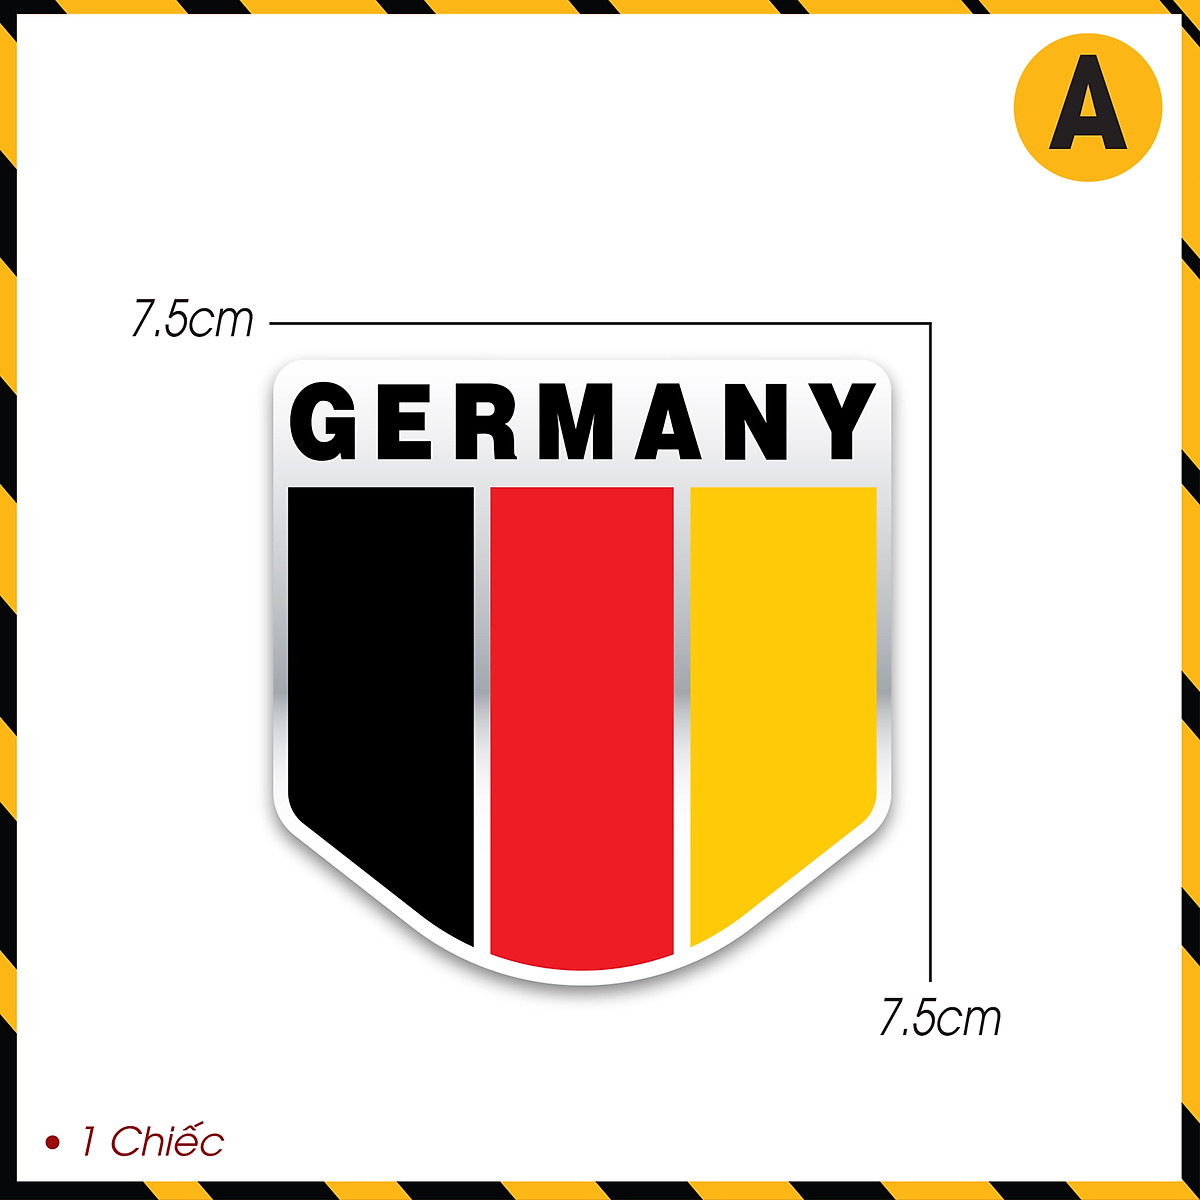 Tem dán cờ Đức: Điều đặc biệt về tem dán cờ Đức là nó không chỉ đẹp mà còn rất thông minh, giúp việc giao tiếp giữa người dùng trở nên dễ dàng hơn. Một cách thật tuyệt để thể hiện tình yêu đối với Đức và những nét đẹp văn hóa của nó.